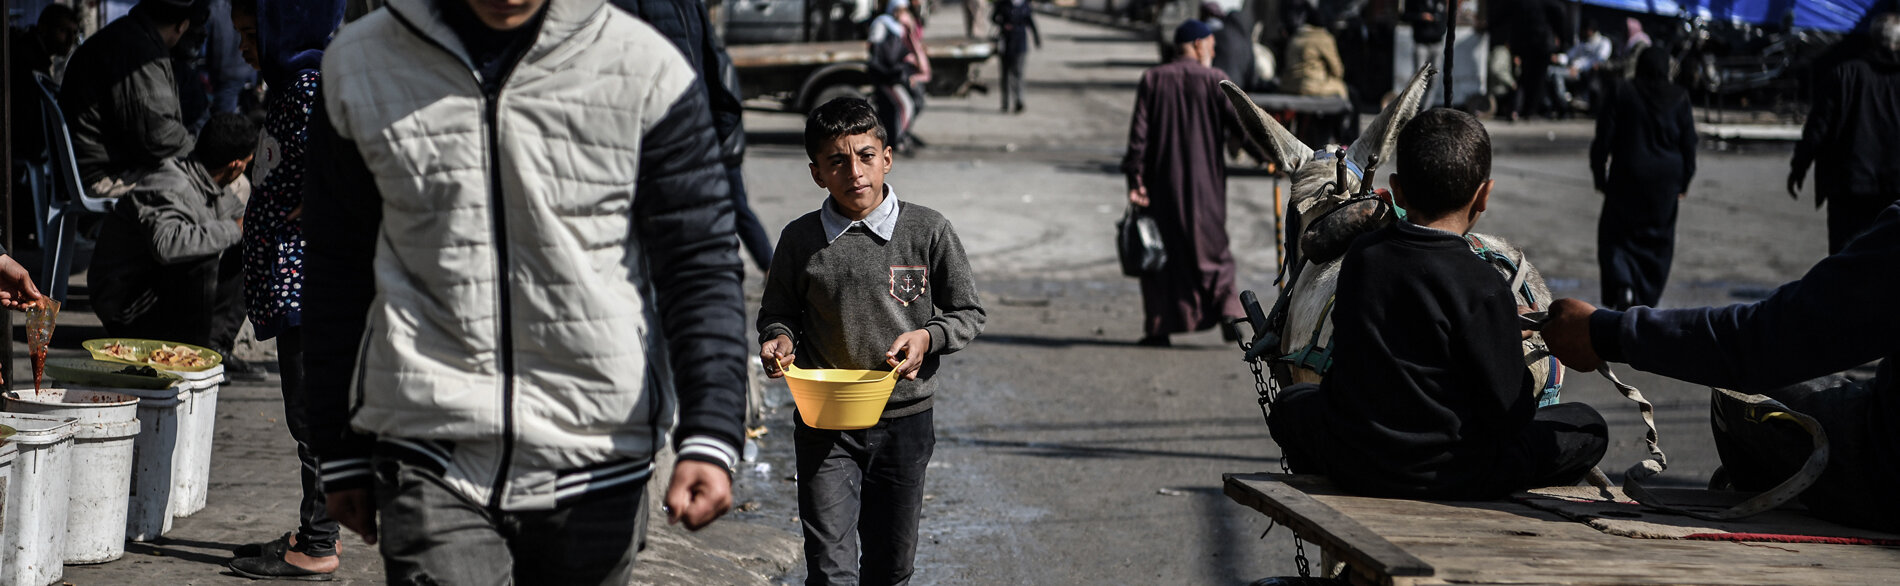 محمد (11 عامًا) يحمل وعاء من الفاصوليا لأسرته التي تقيم في خيمة في رفح. يقول: «كل يوم، أمشي كيلومترين وأقضي أكثر من خمس ساعات فقط لتوفير وجبة واحدة في اليوم لأسرتي.» تصوير اليونيسف/زقوت